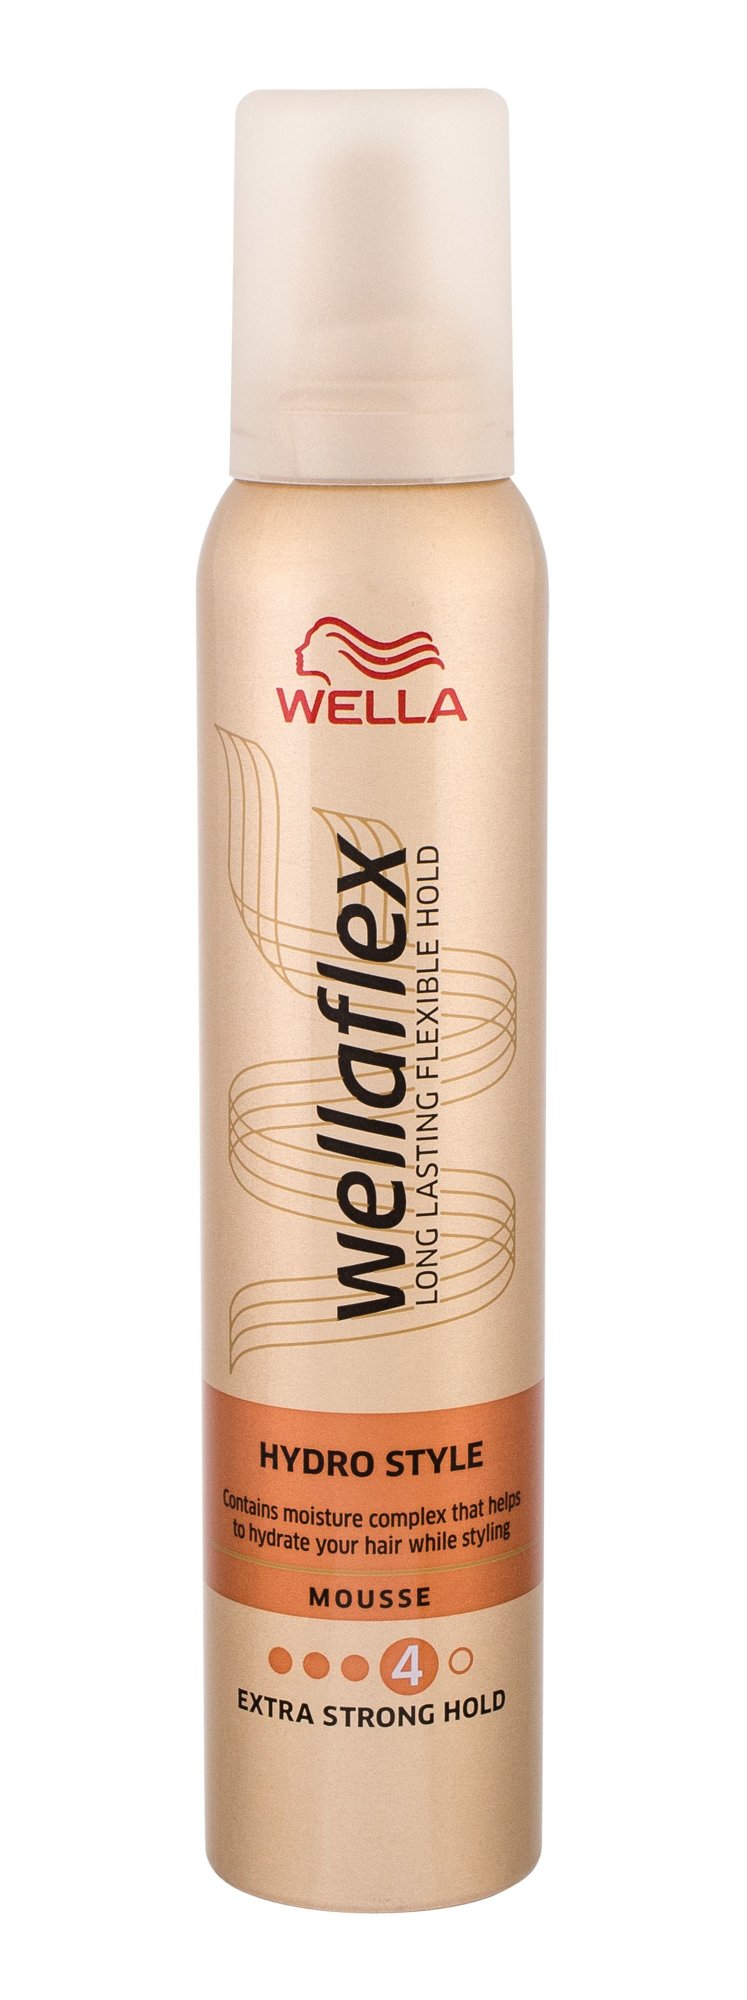 Wella Wellaflex Hydro Style